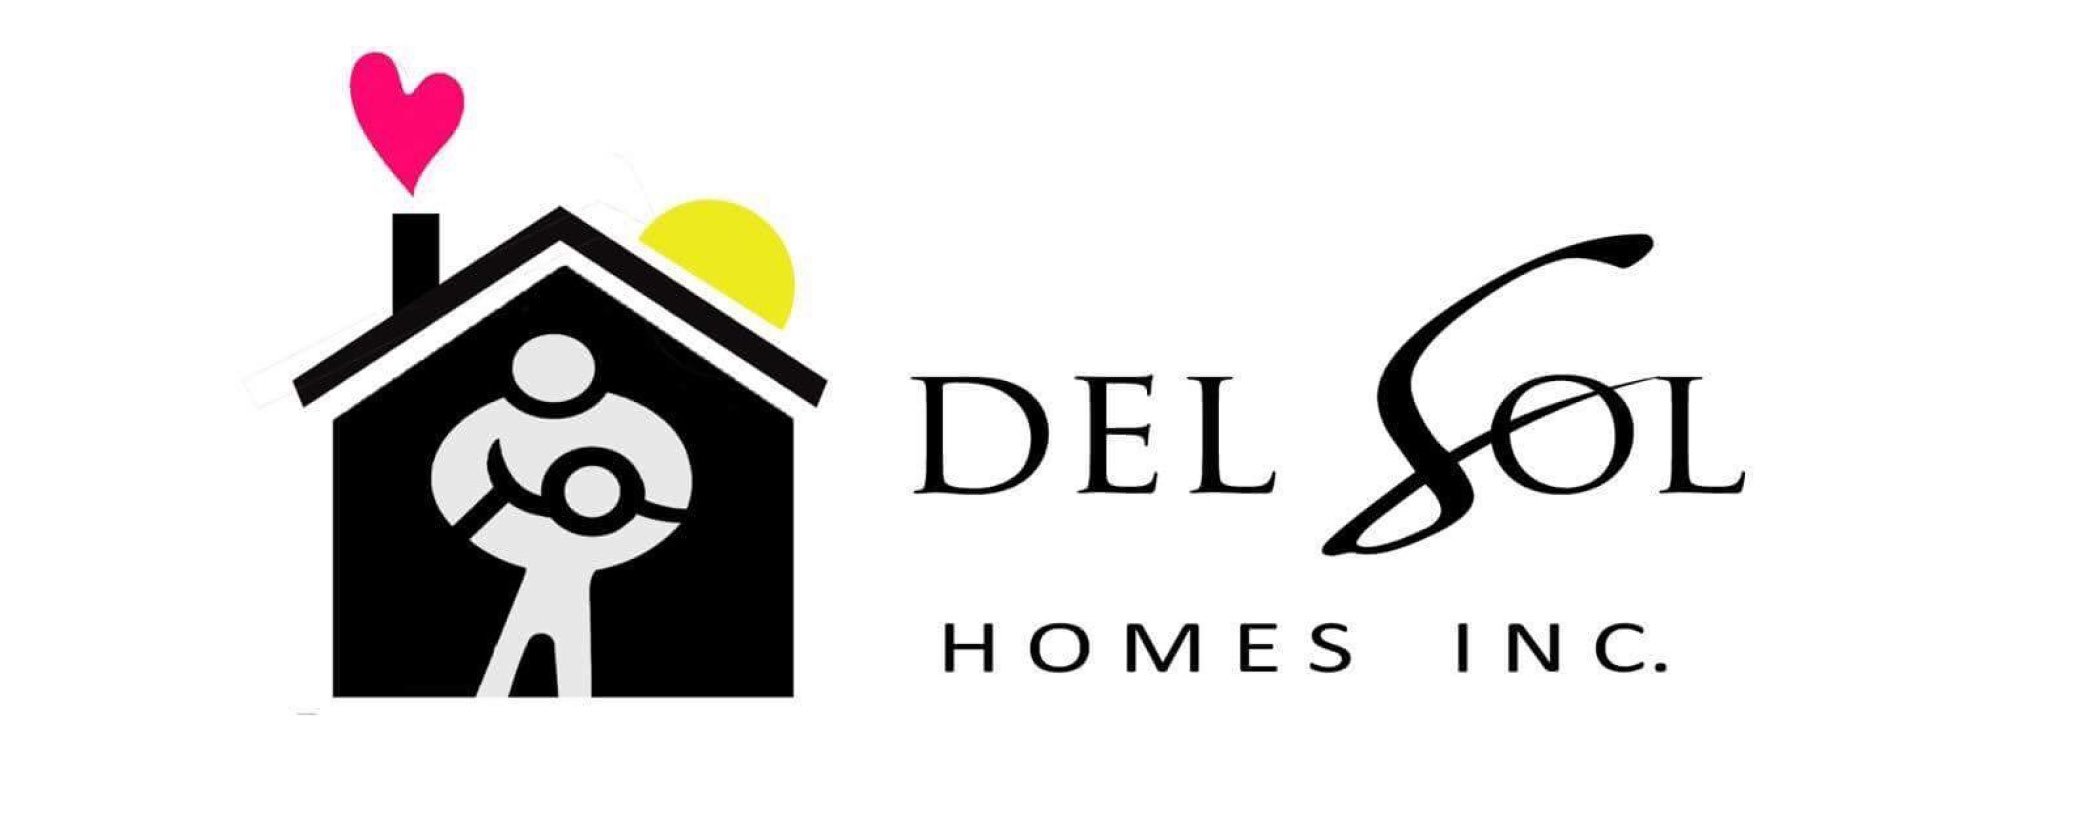 Del Sol Homes.jpg